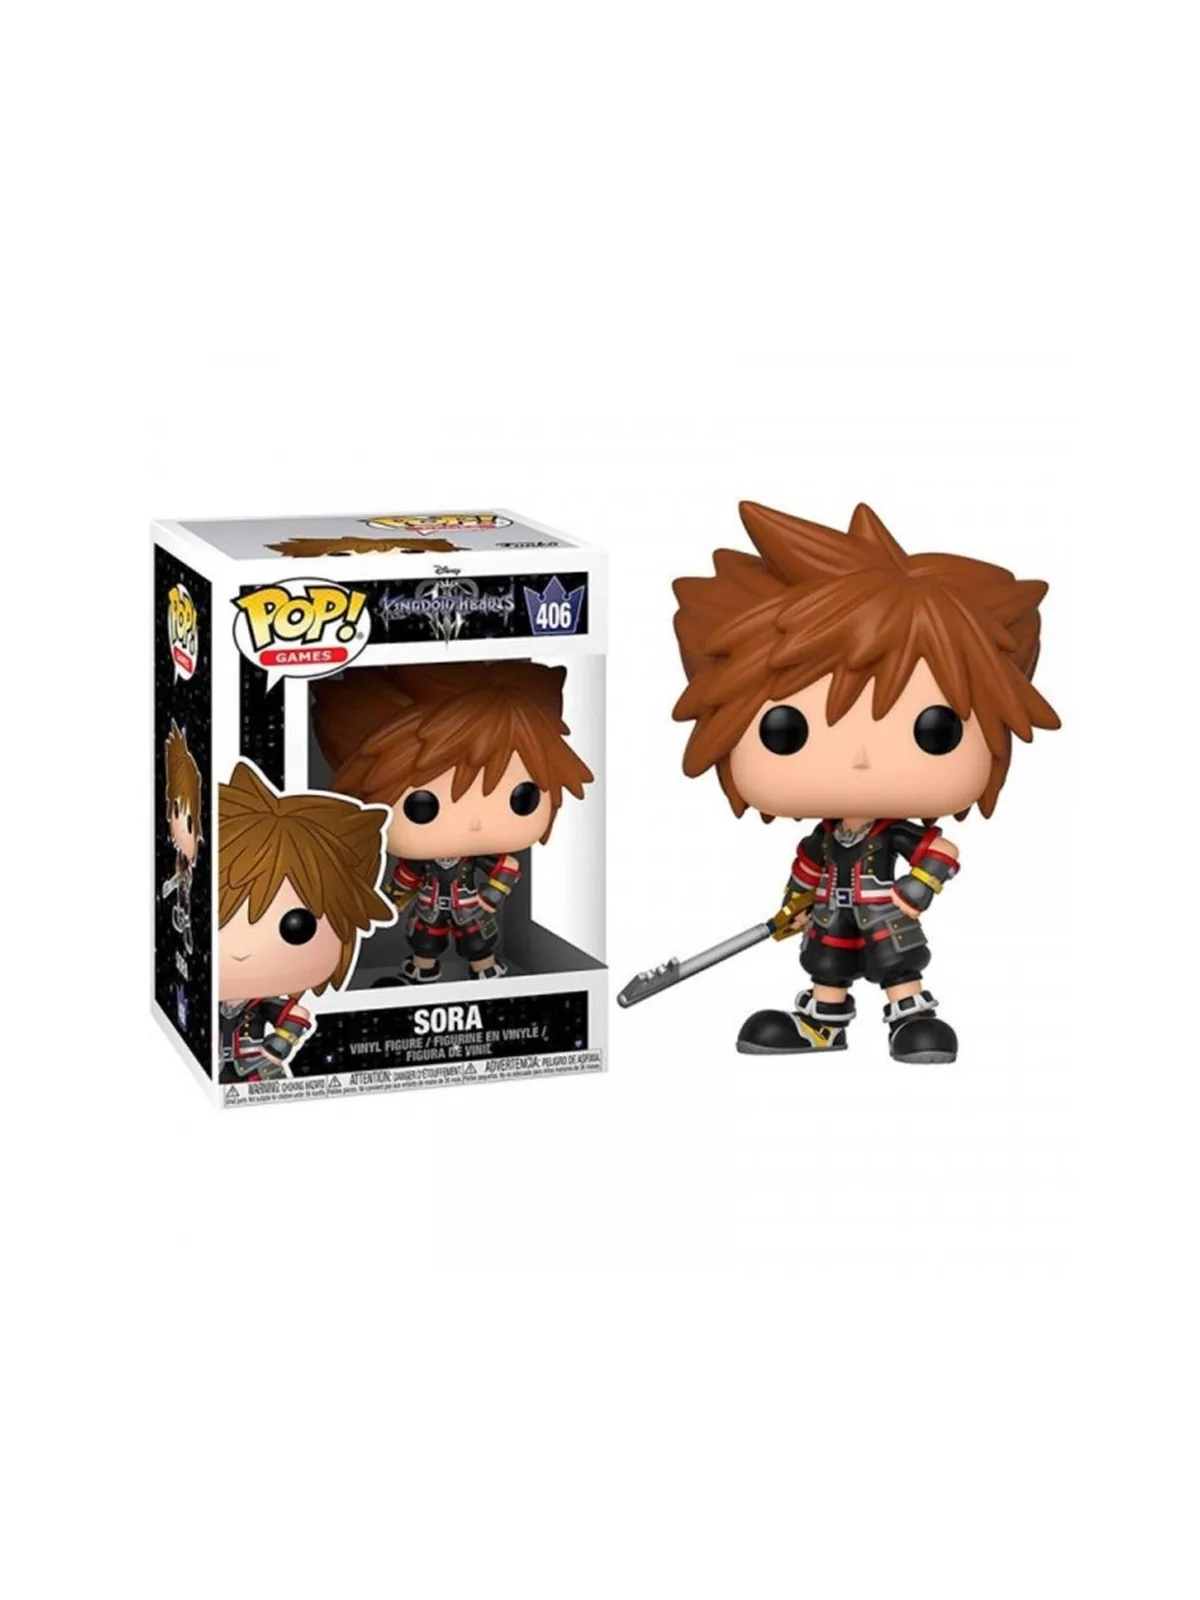 Comprar Funko POP! Kingdom Hearts 3 Sora (483) barato al mejor precio 